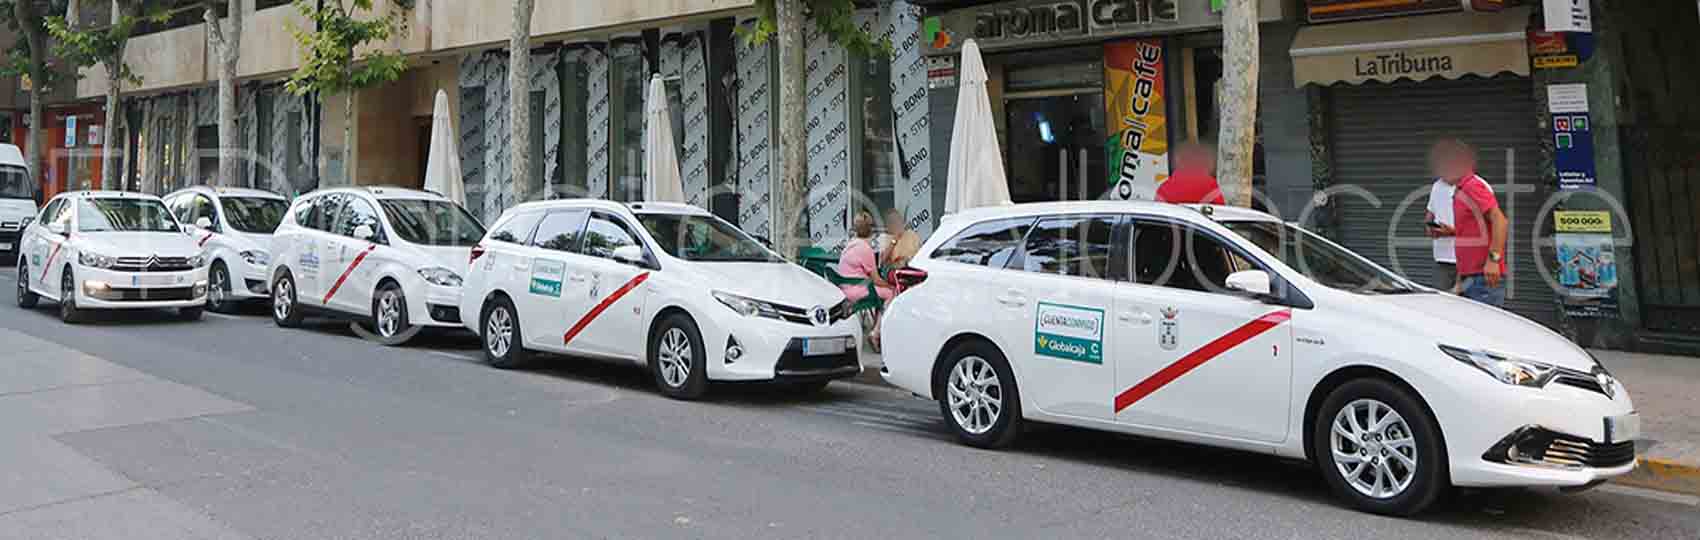 Noticias del sector del taxi y la movilidad en Albacete.  Mantente informado de todas las noticias del taxi de Albacete en el grupo de Facebook de Todo Taxi.